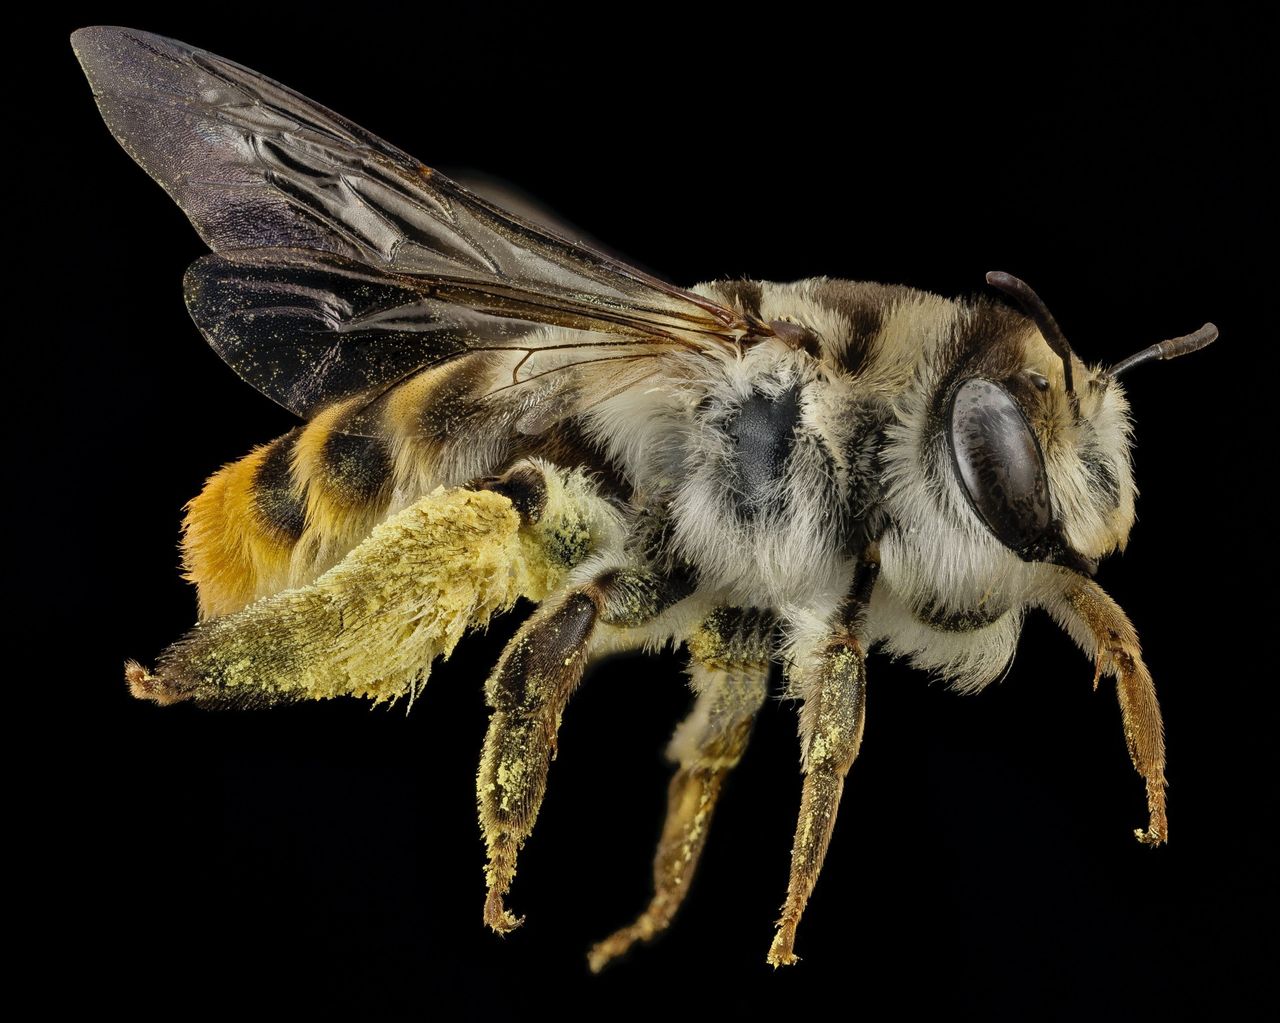 Te pszczoły przezwyciężyły rozkład. Przetrwały tak tysiąclecia